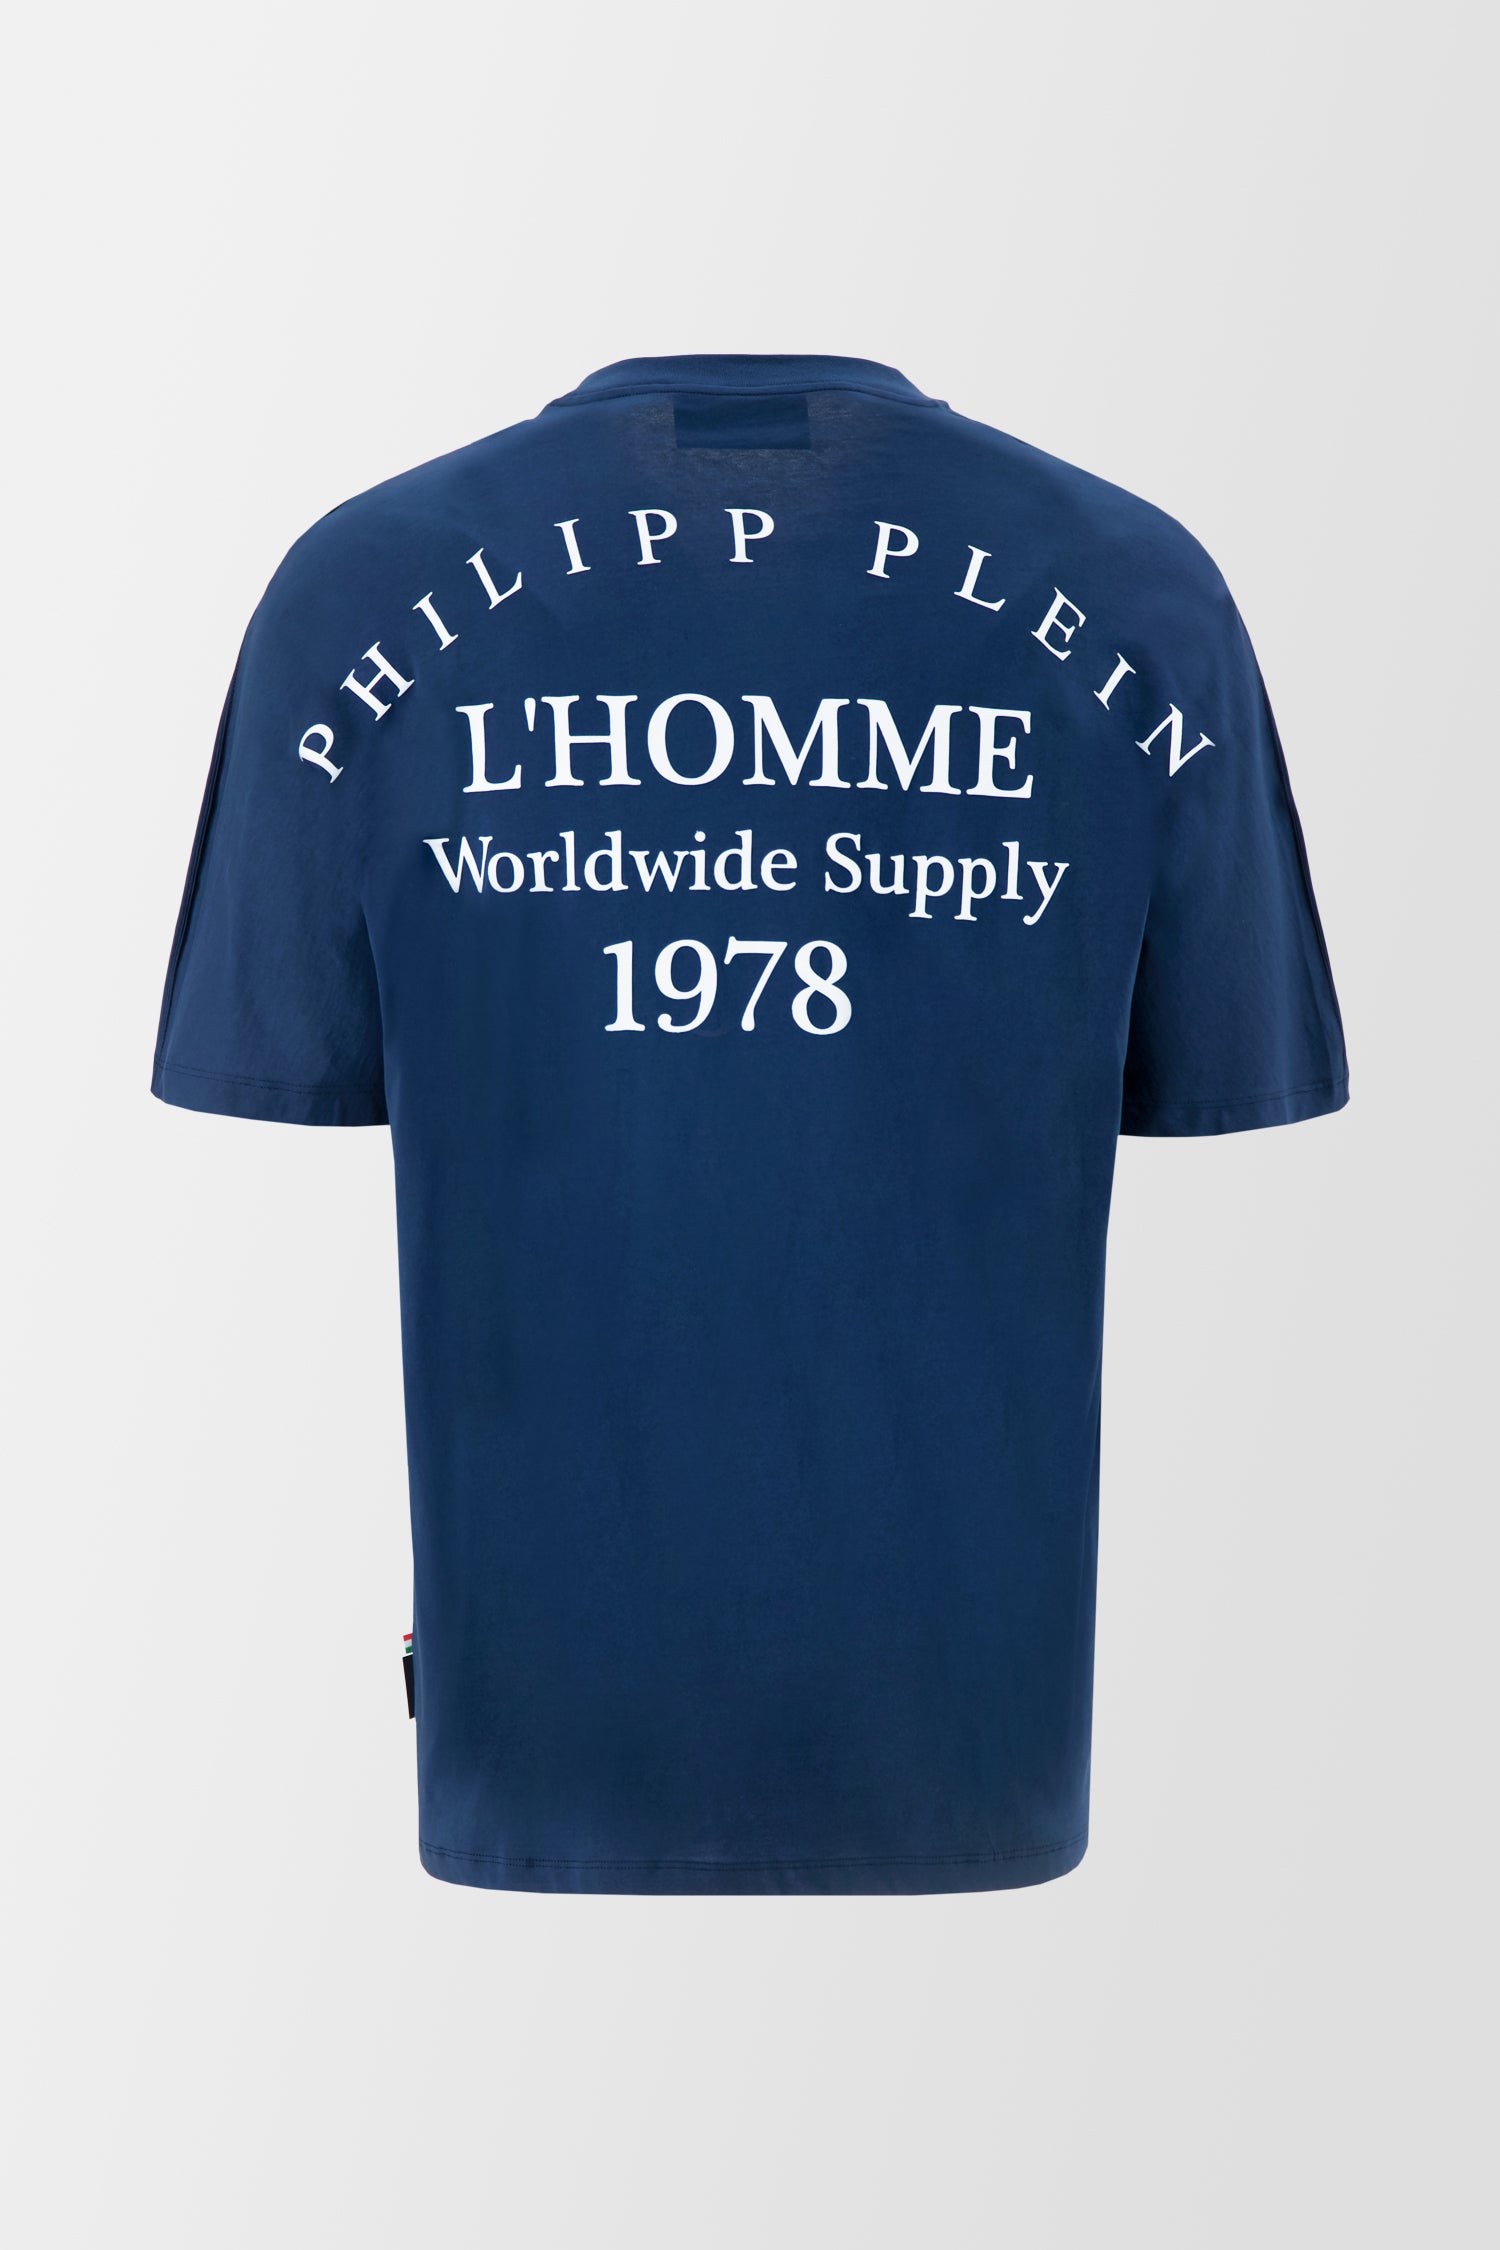 Philipp Plein Navy Round Neck SS PP 1978 T-Shirt